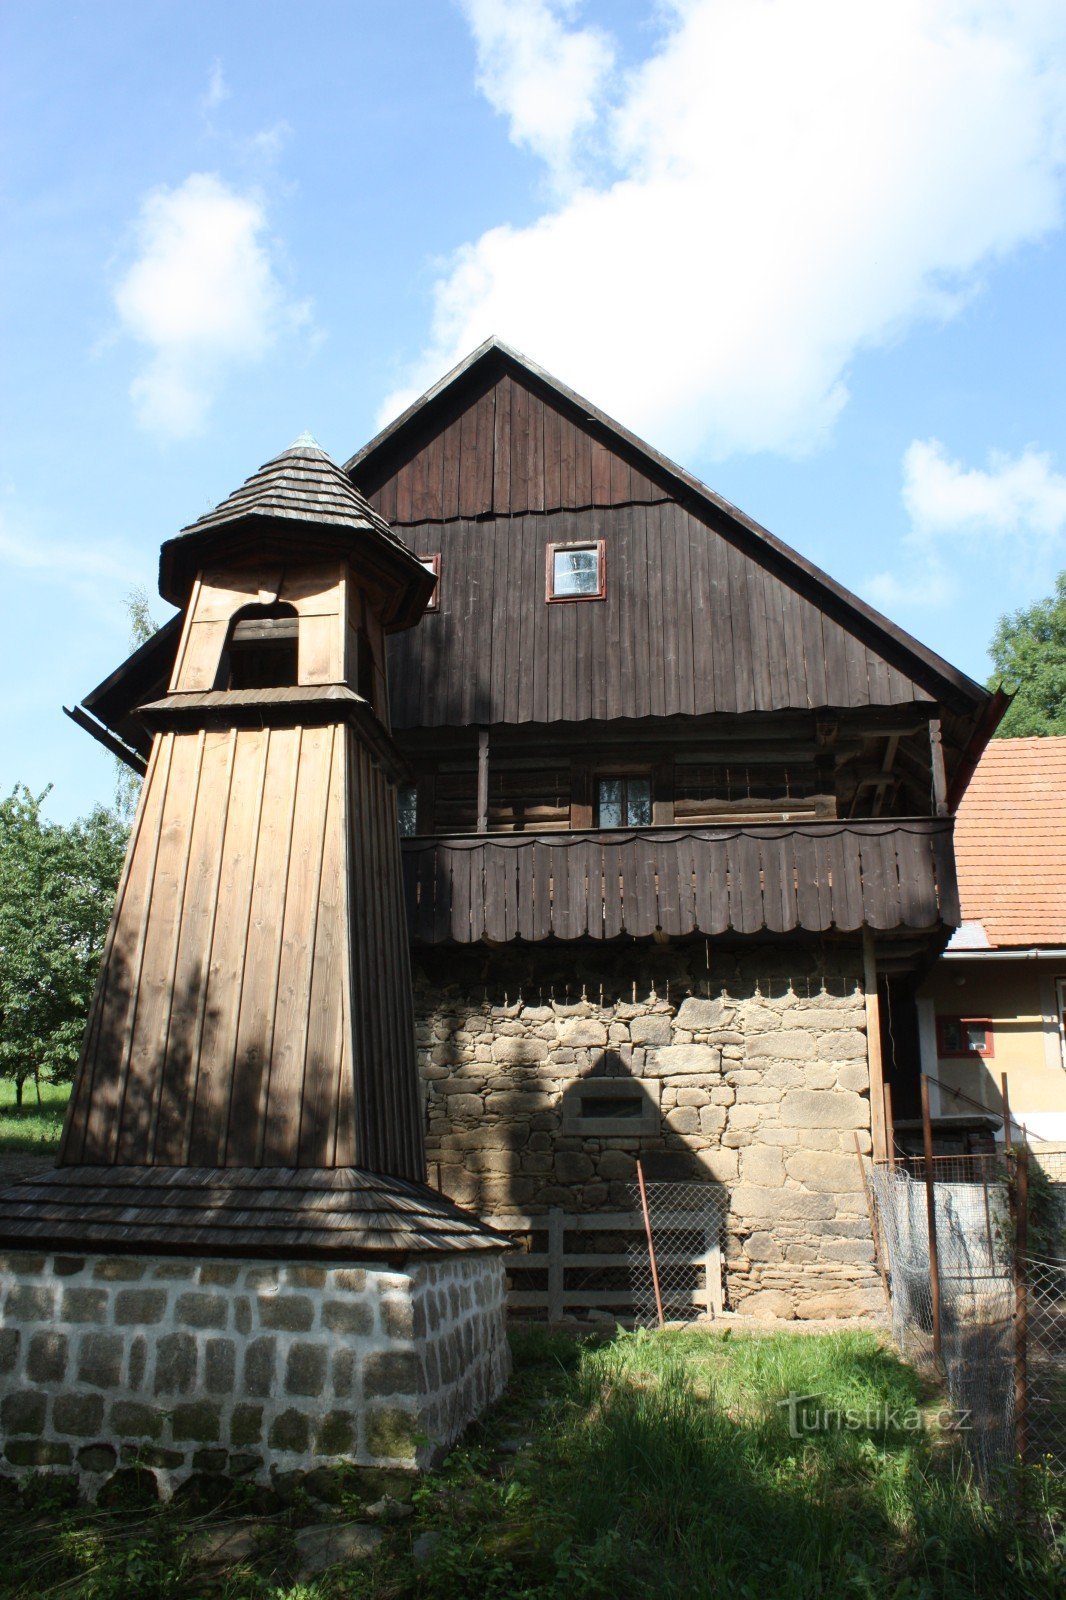 Tháp chuông bằng gỗ ở Škodějov thuộc vùng Semila